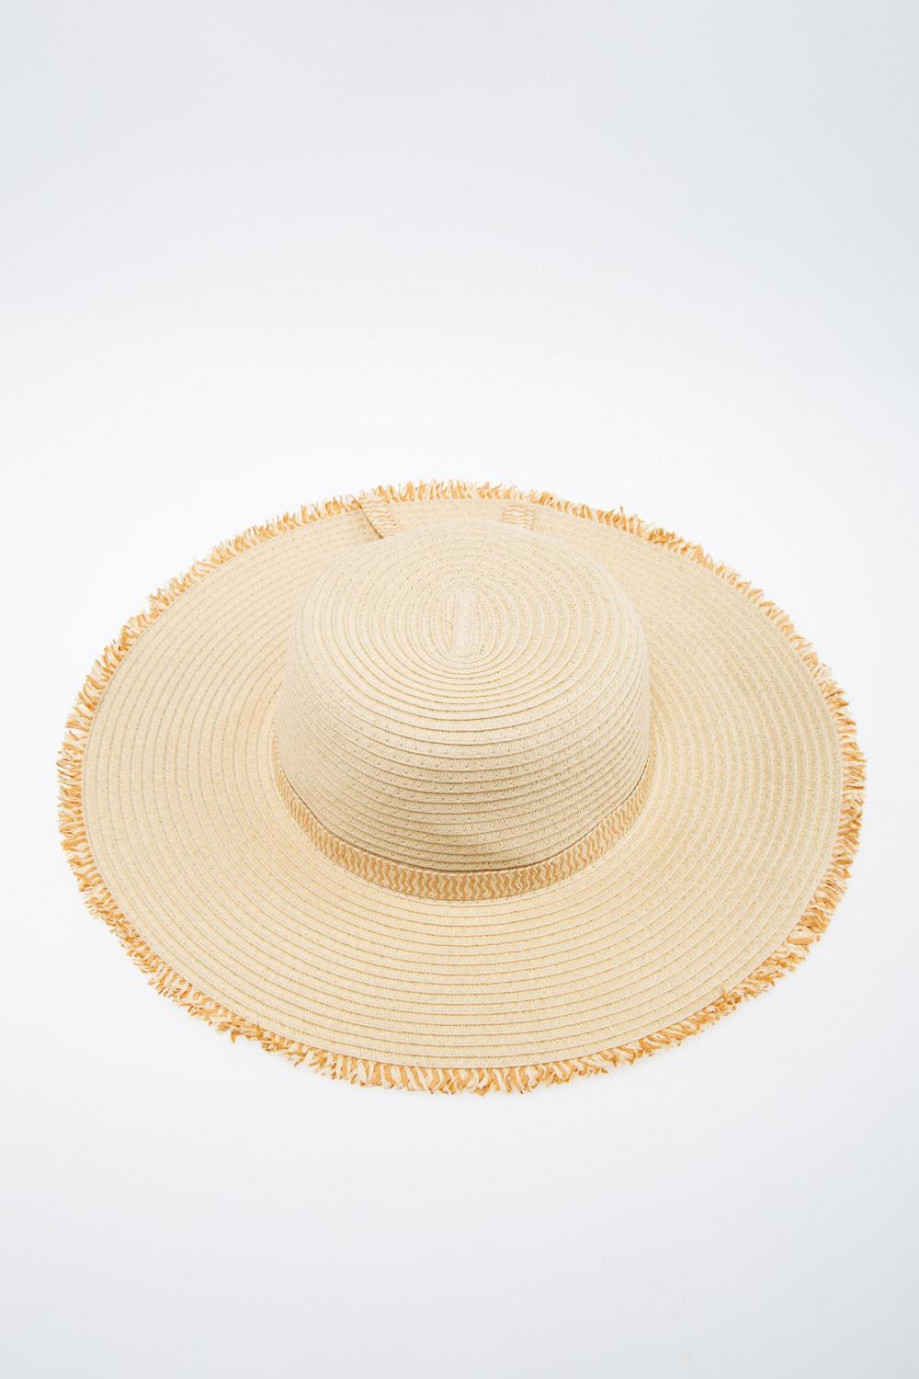 Sombrero crema claro con ala ancha y detalles en el borde